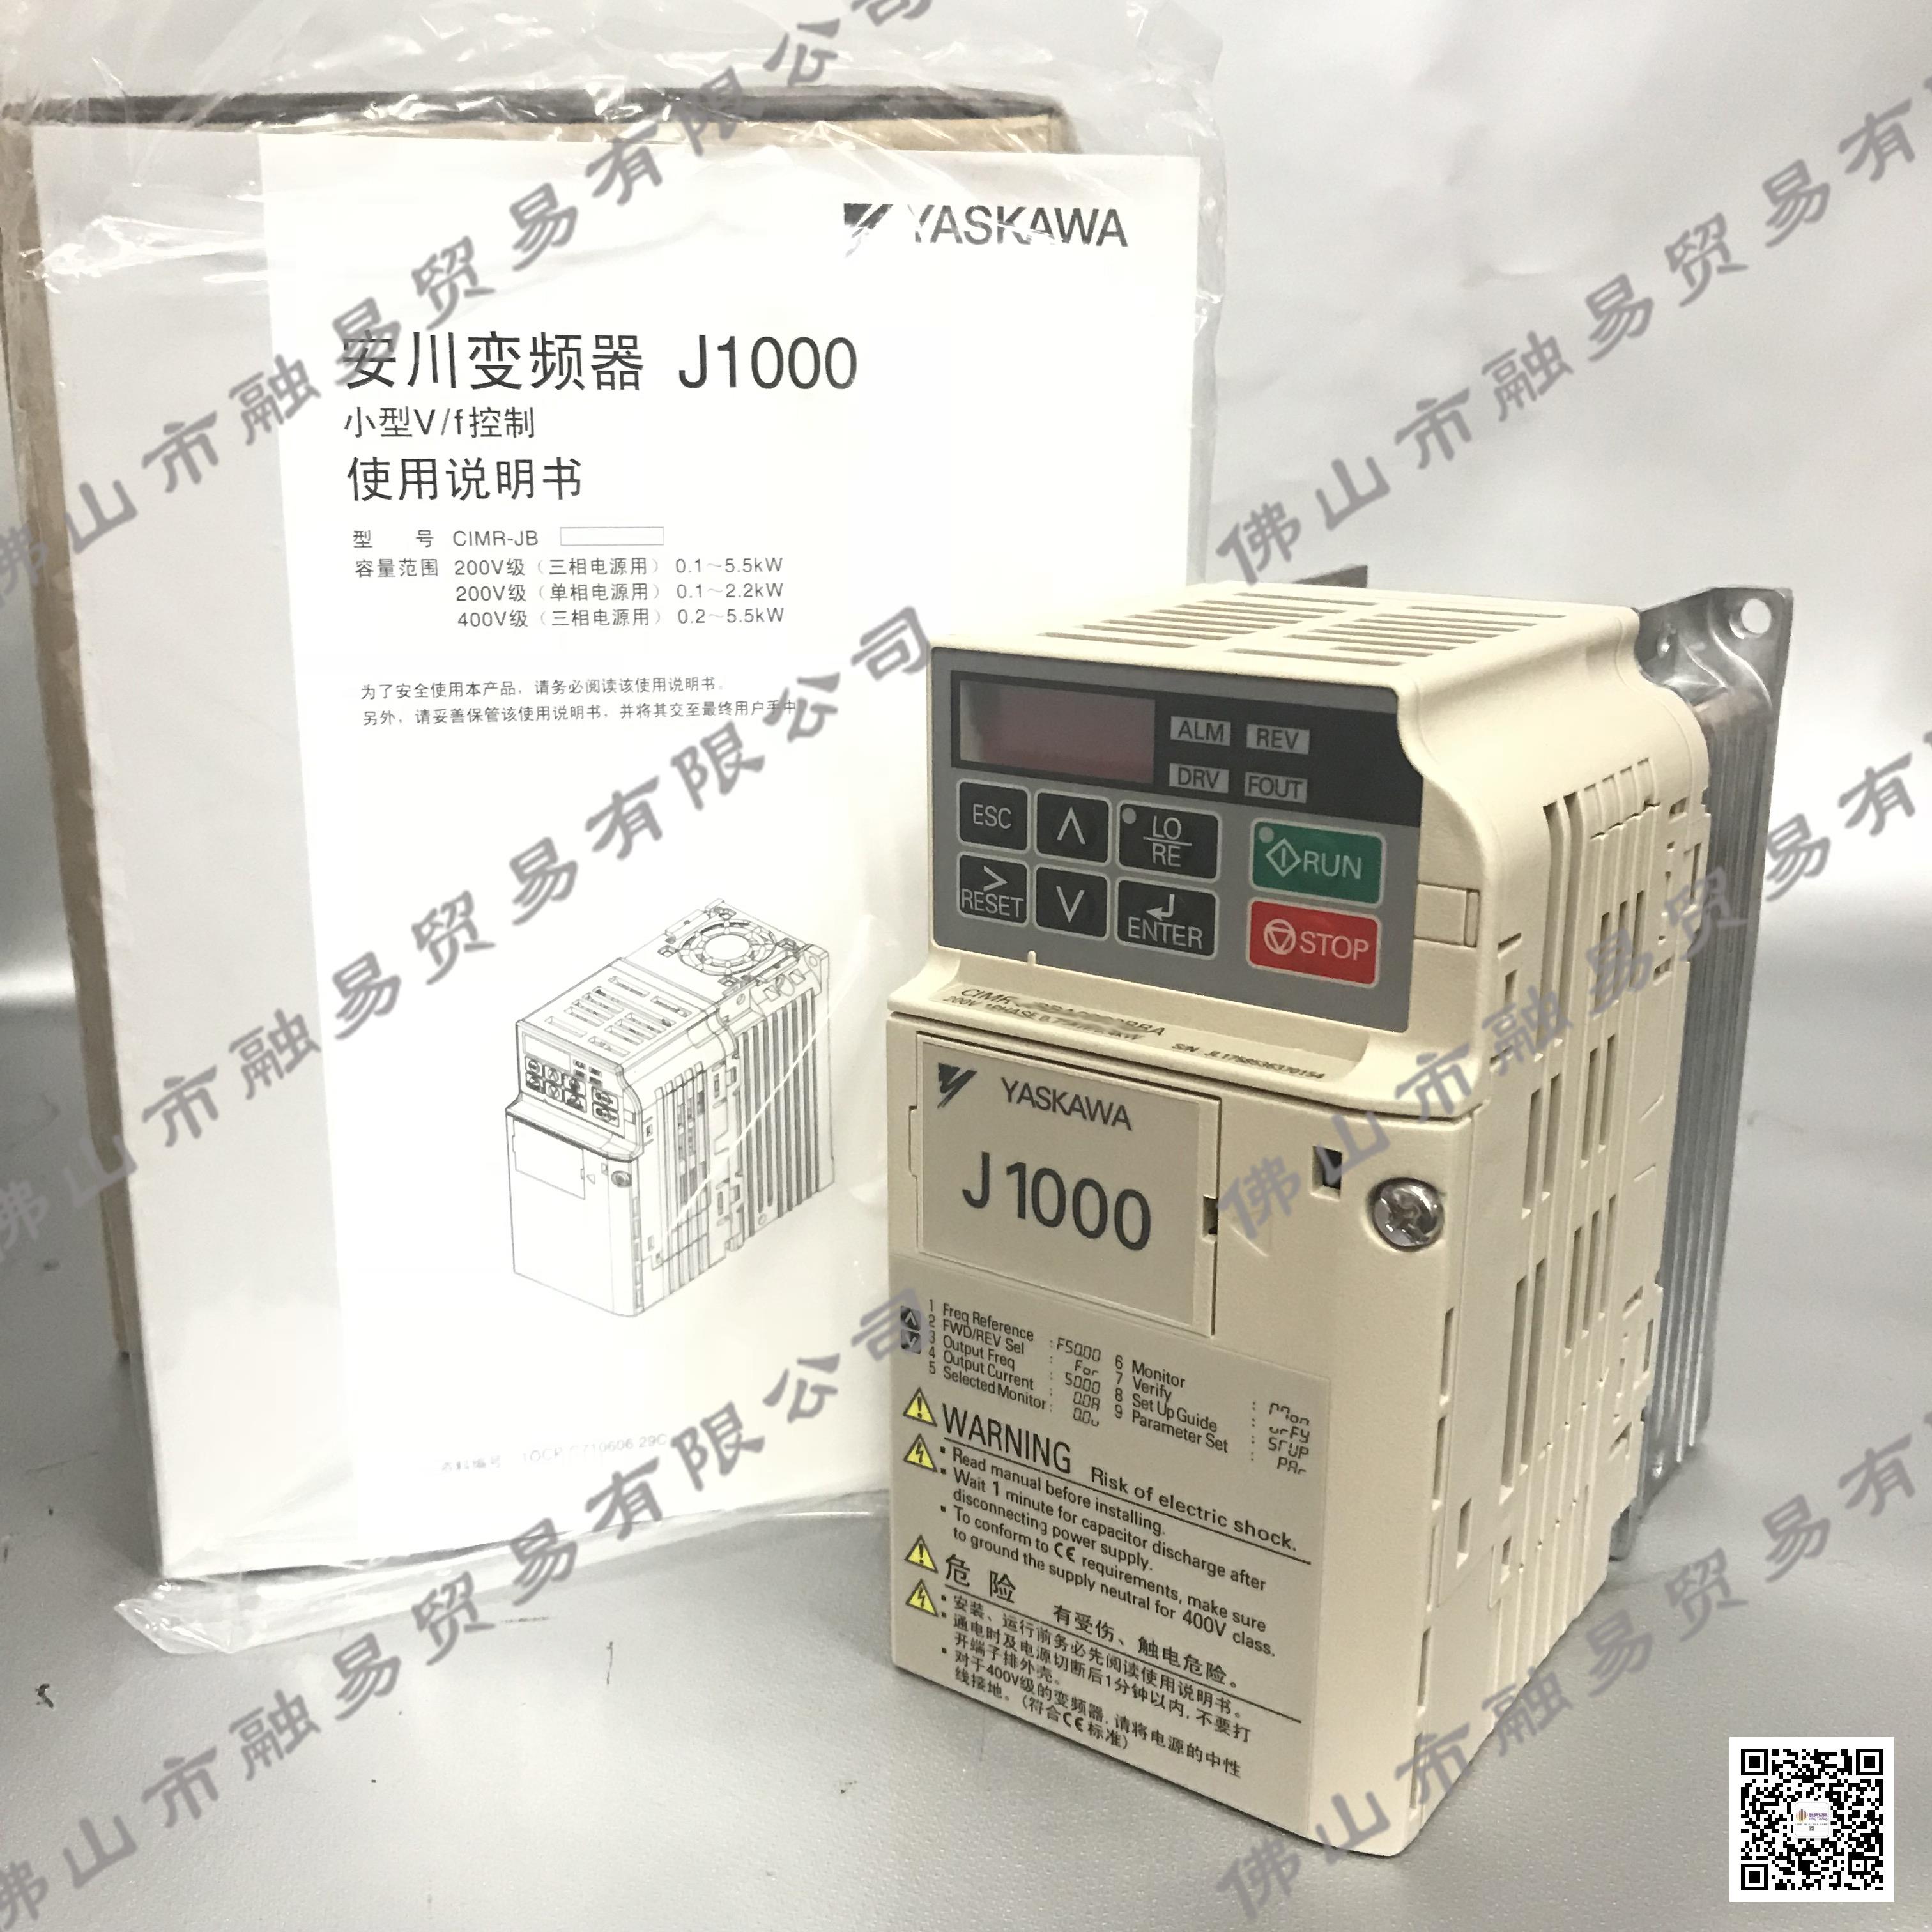 安川小型简易型变频器CIMR-JBBA0003BBA